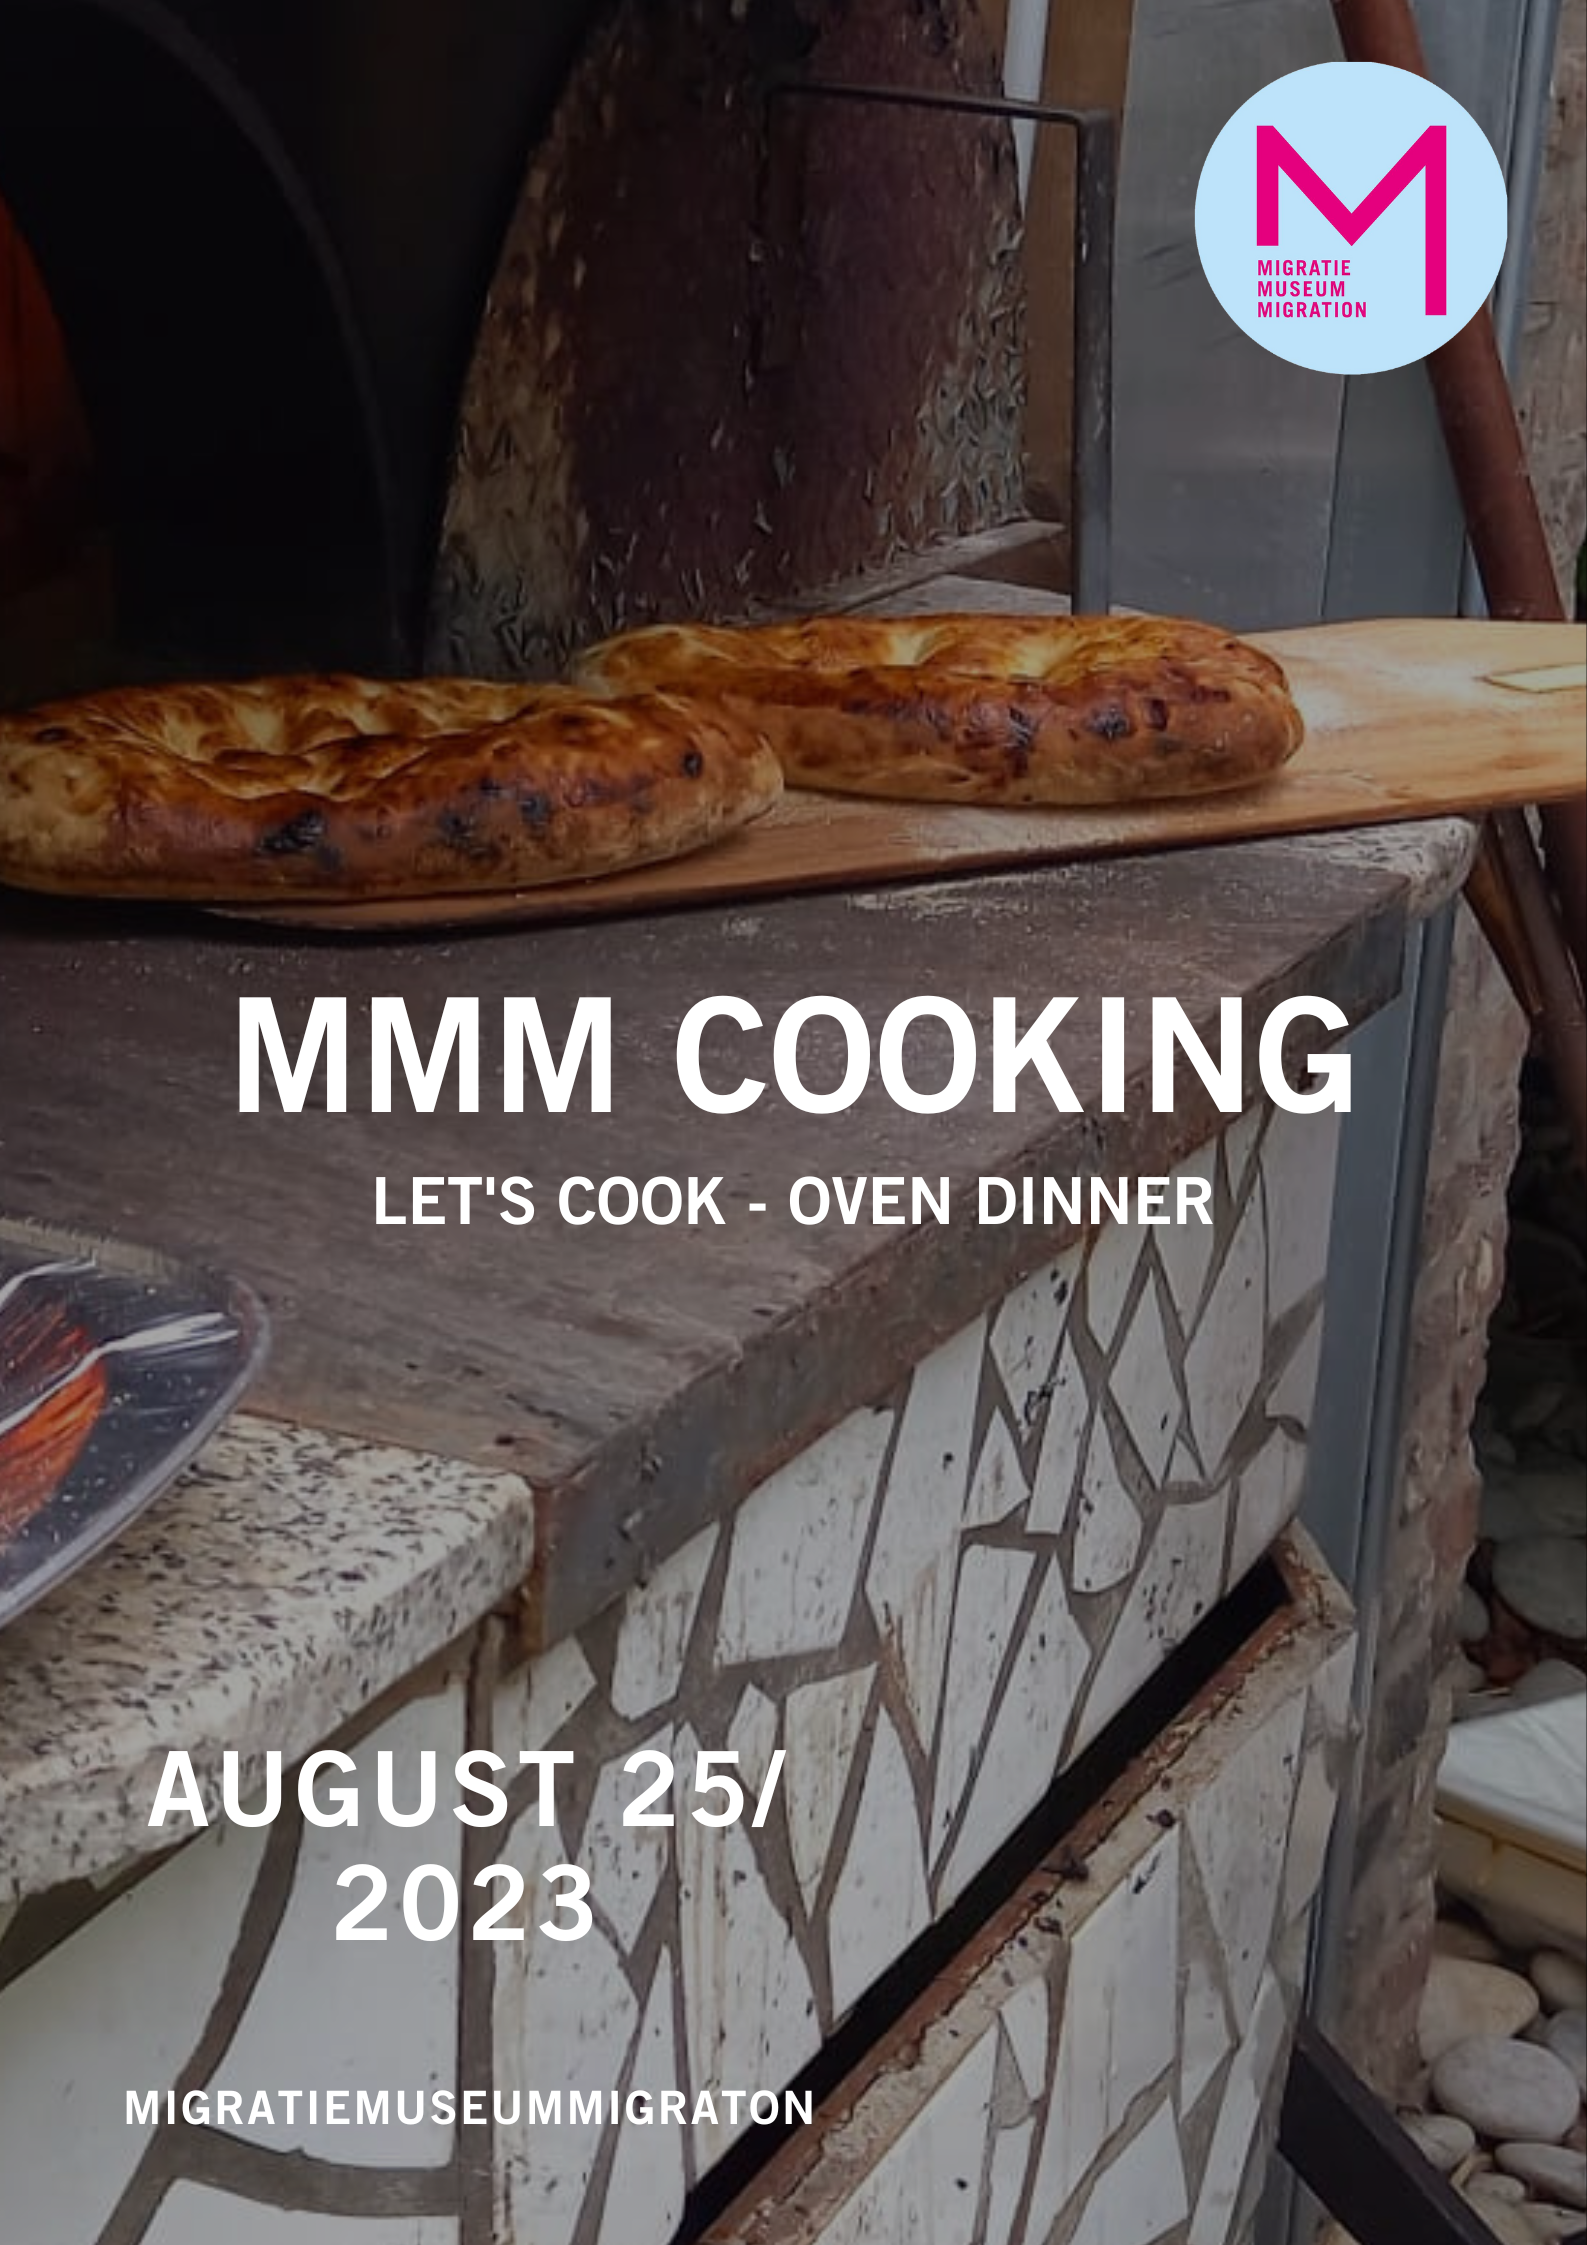 MMM Cooking - Oven dinner (Publication Instagram (Carré)) (Affiche (Portrait - 42 x 59,4 cm))